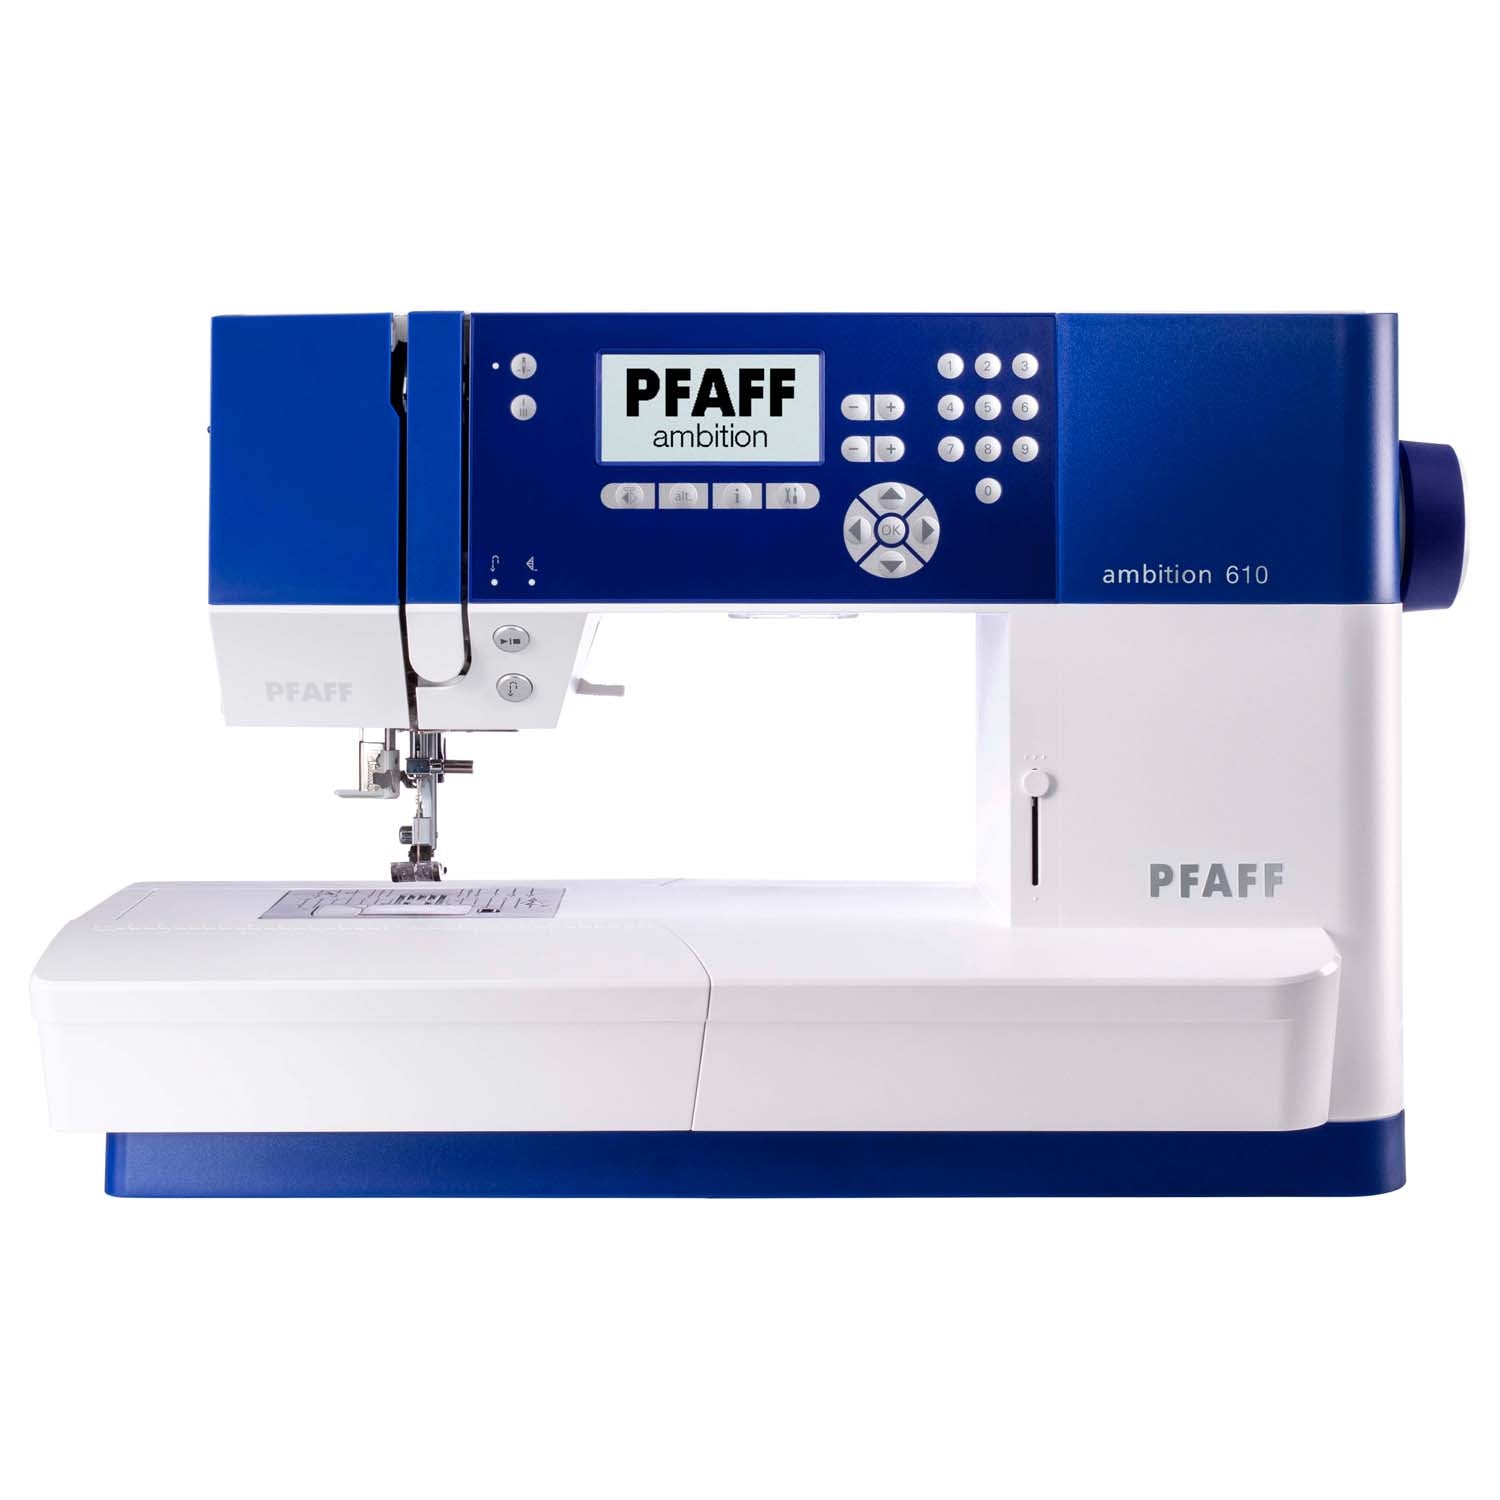 PFAFF Ambition 610 Sewing Machine